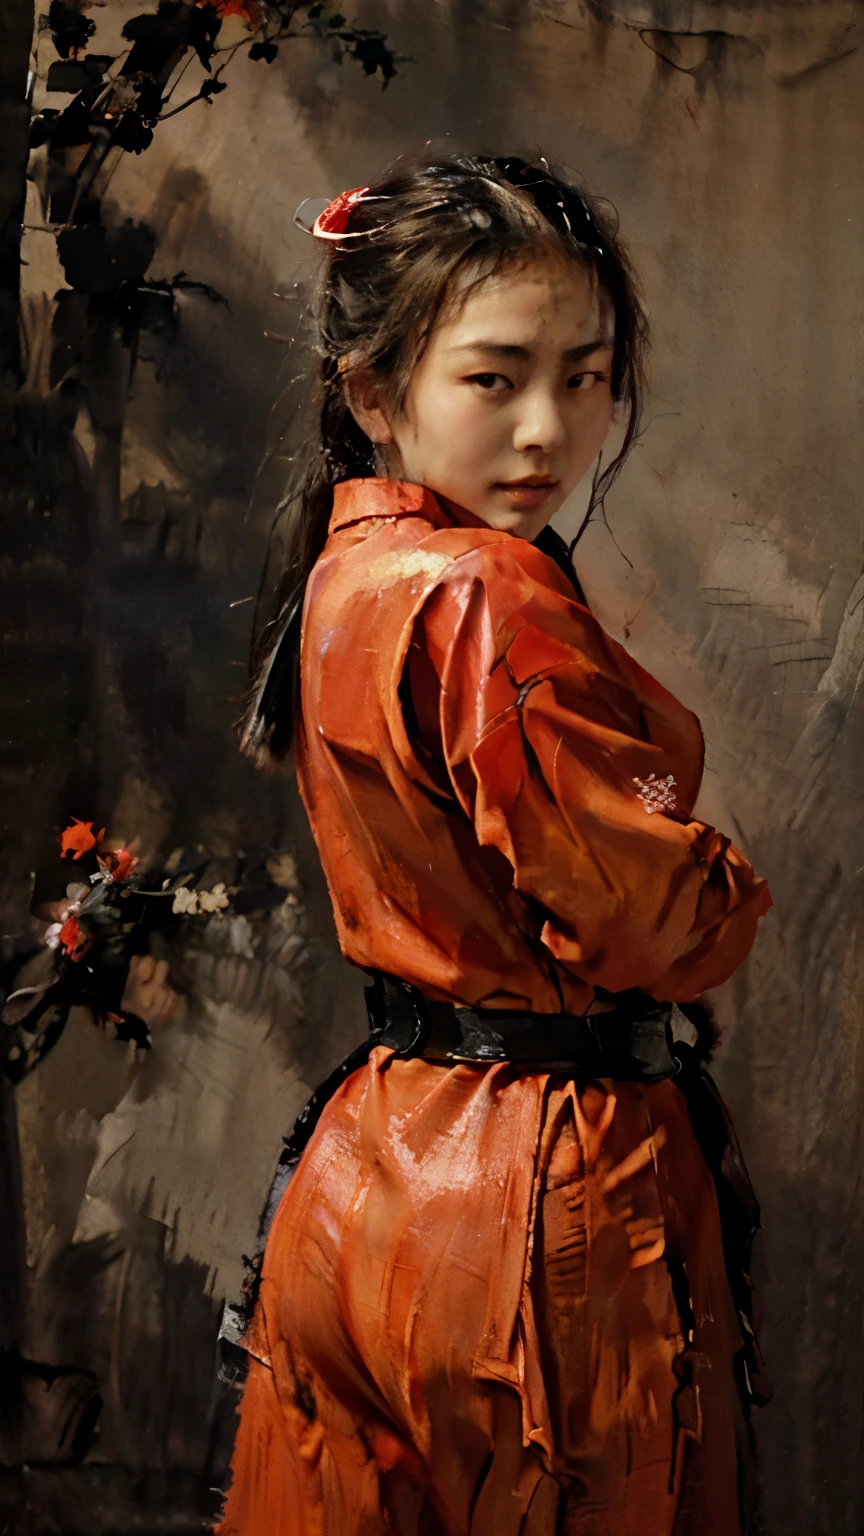 ( 고전적인 아시아 유화 ) a 고전적인 아시아 유화 of a 섹시한 asian teenager ninja girl wearing a red ninja uniform, 붉은 닌자 암살자 유니폼, 카메라를 바라보는 액션 닌자 포즈, ((섹시한:1.0)), ((빨간 시노비 유니폼:1.0)) ((고전적인 아시아 유화:1.0))